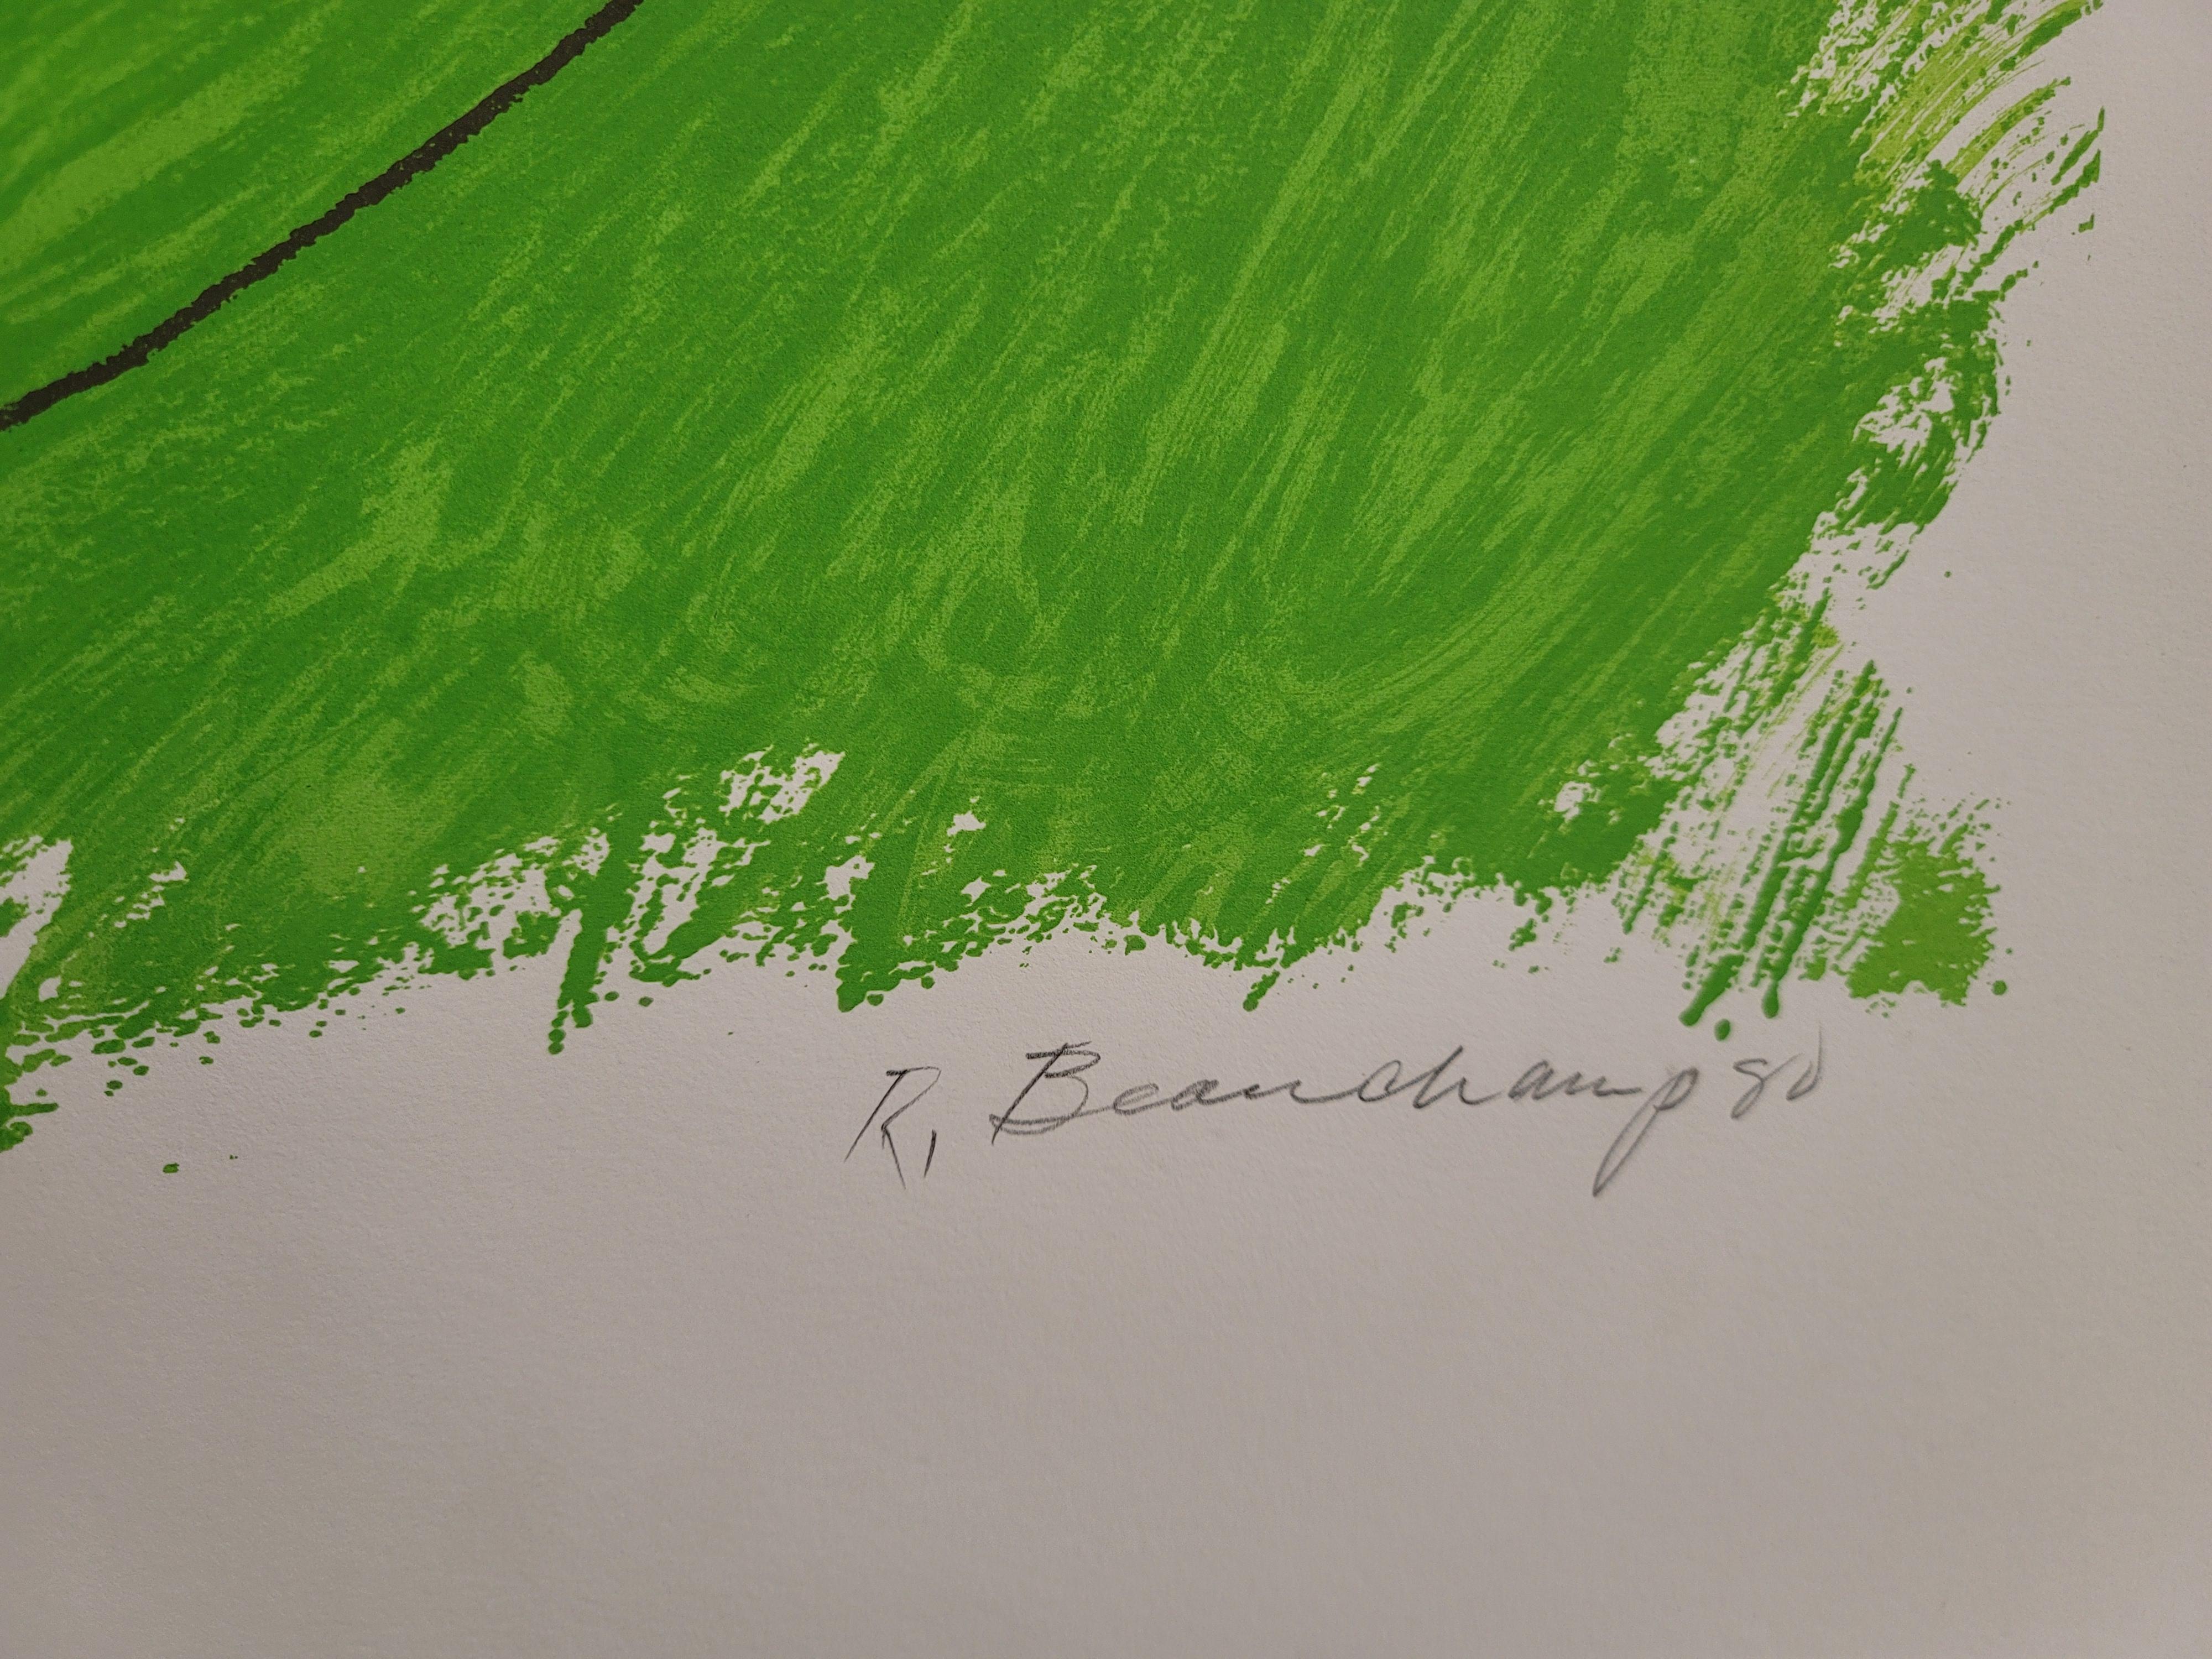 Grüne Flamme – Print von Robert Beauchamp